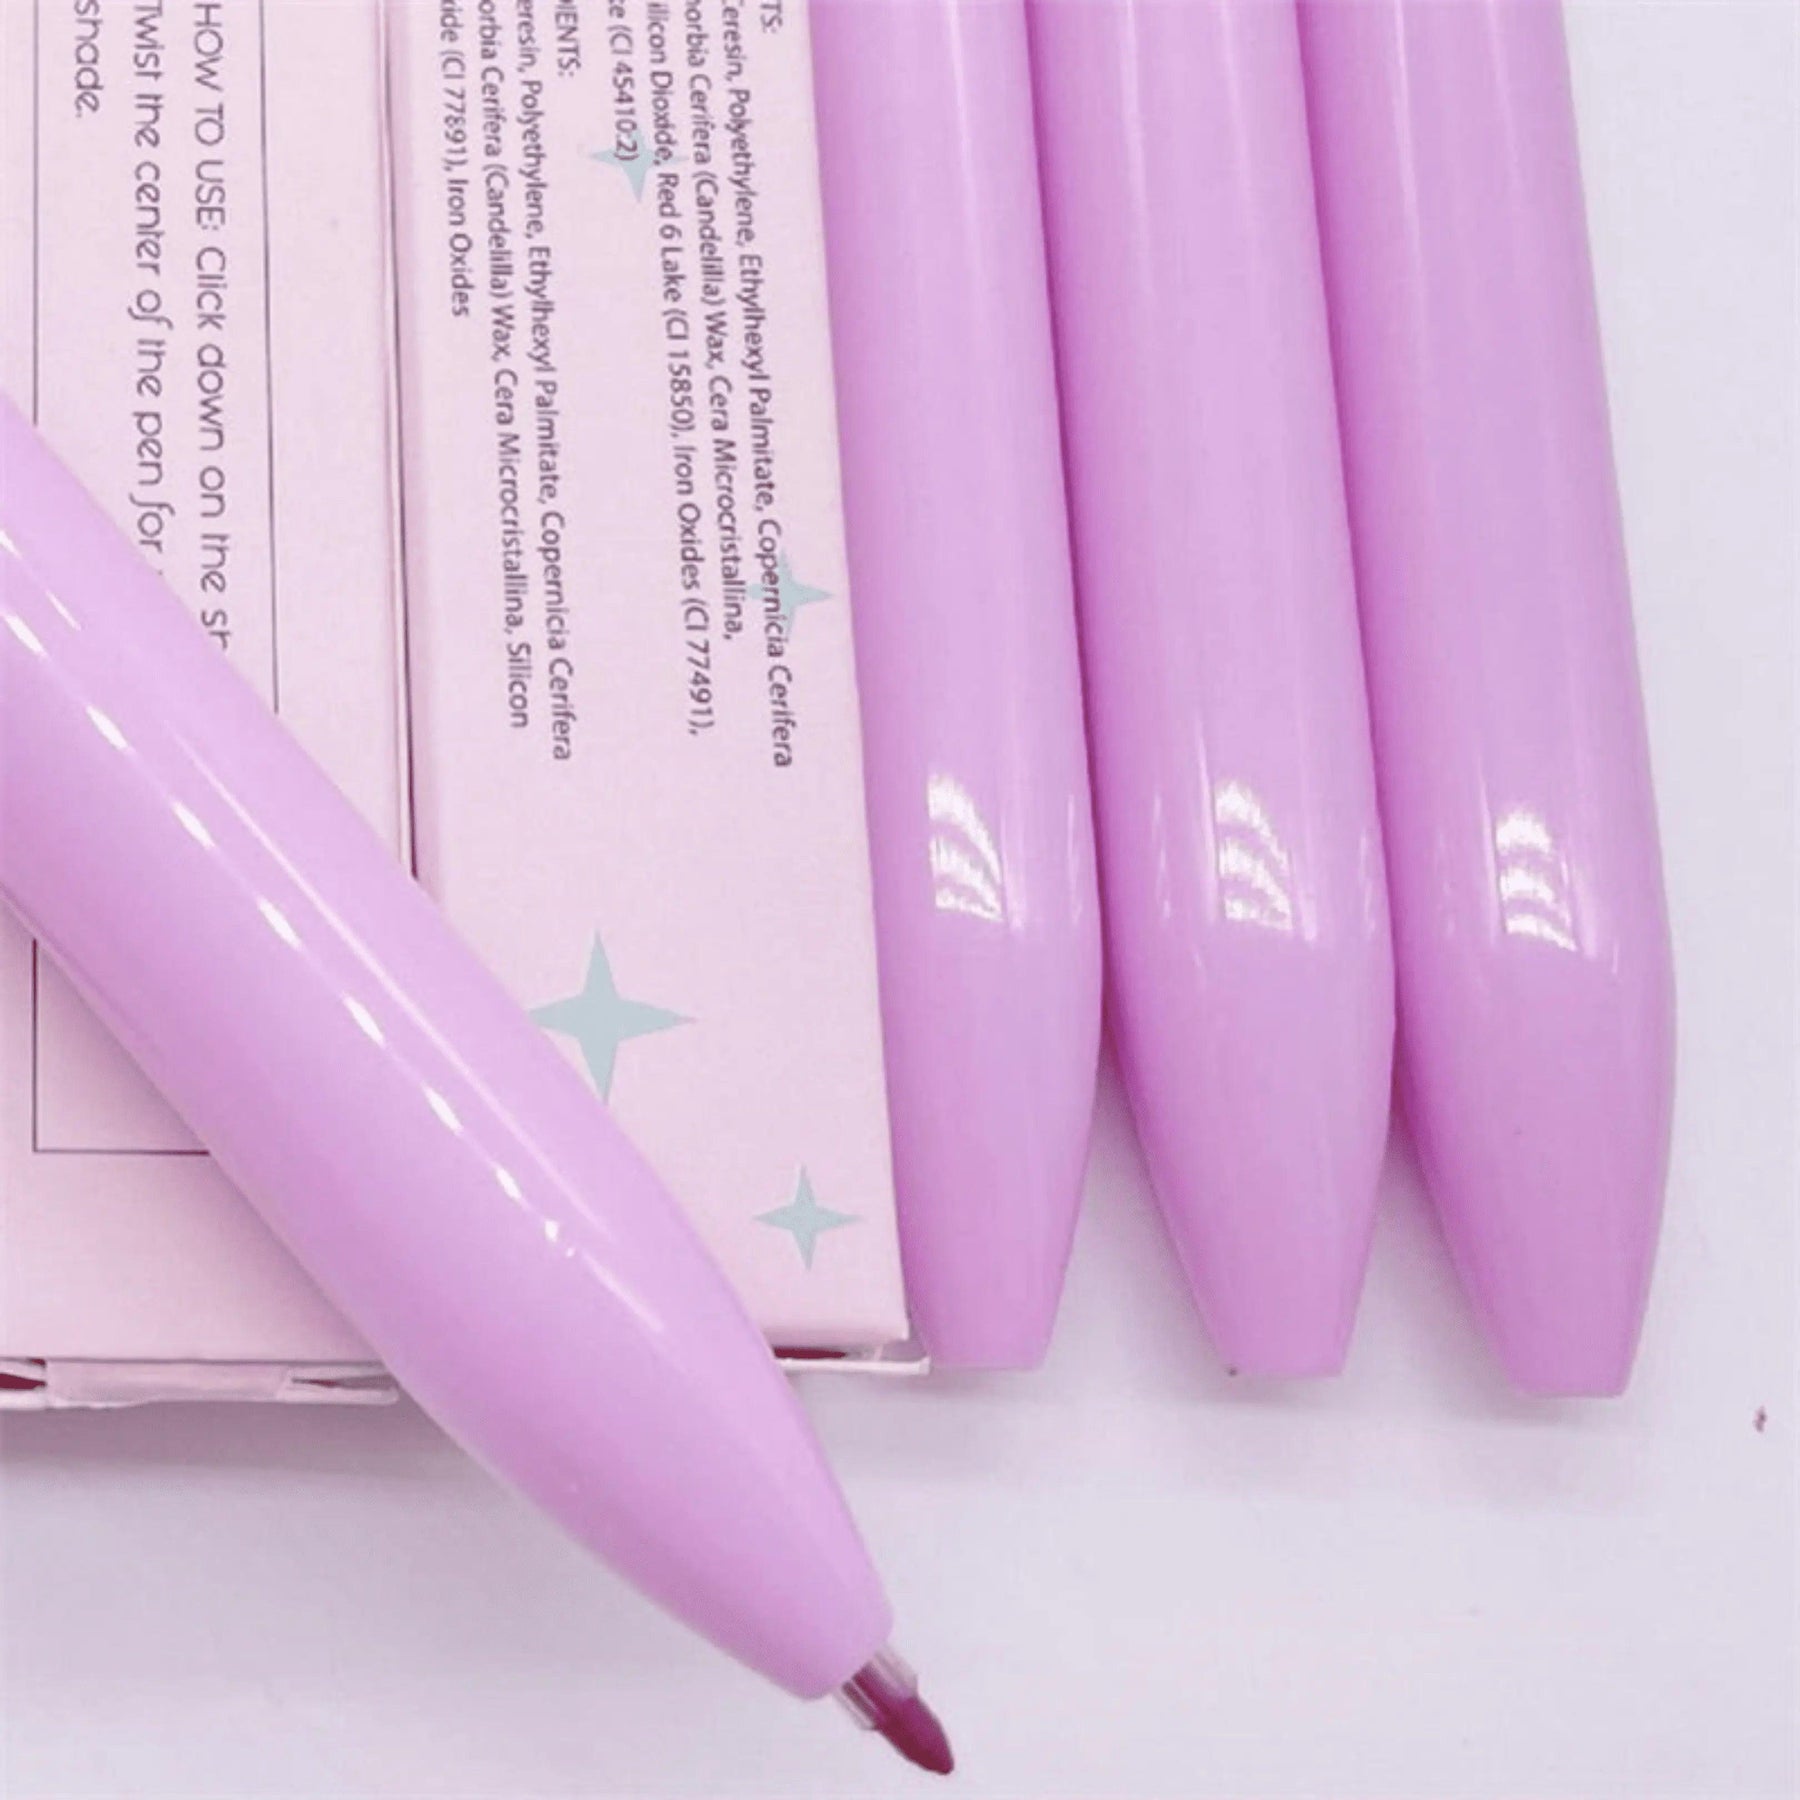 KIT Caneta Beauty Pen ® 4 em 1 *COMPRE 1 LEVE 3* - uniescolhas